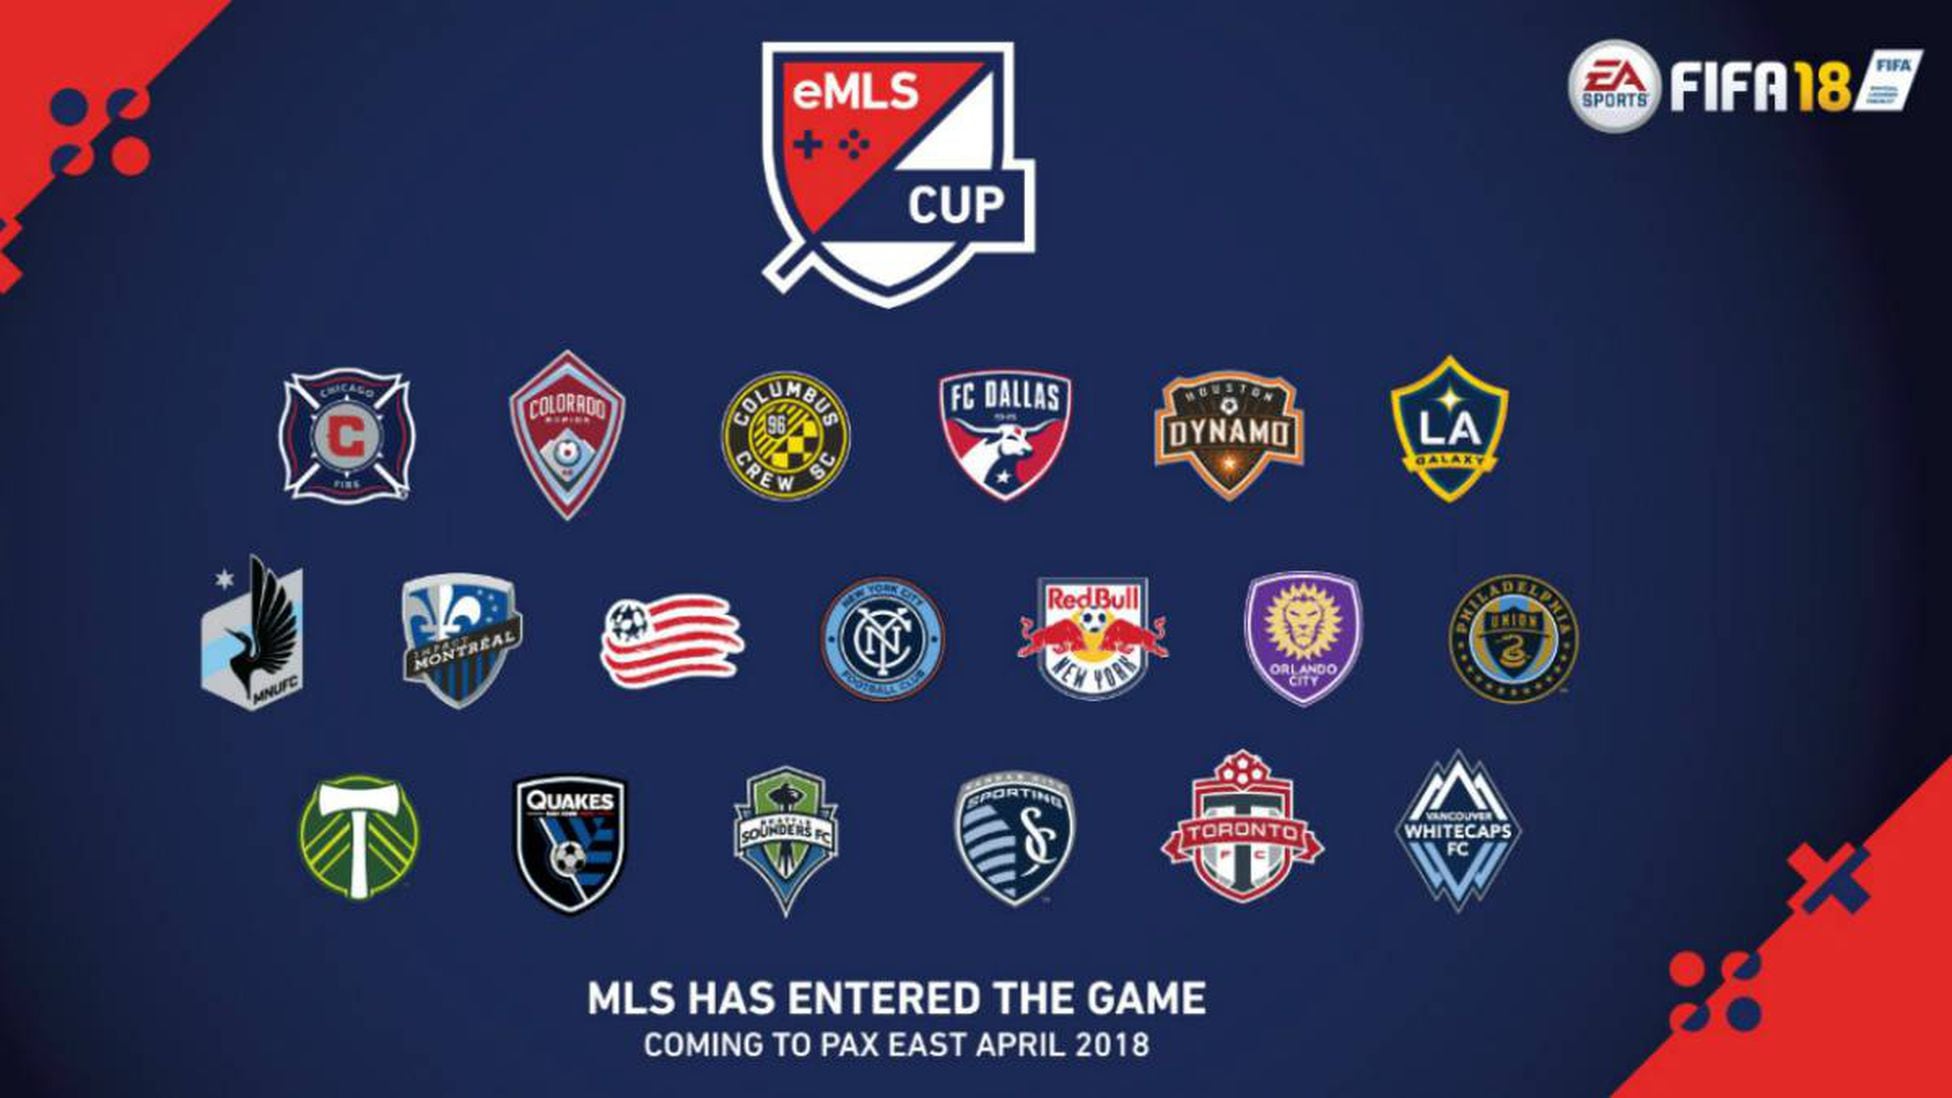 roto binario Superior Top de jugadores y equipos de MLS en FIFA 18 Ultimate Team - AS USA